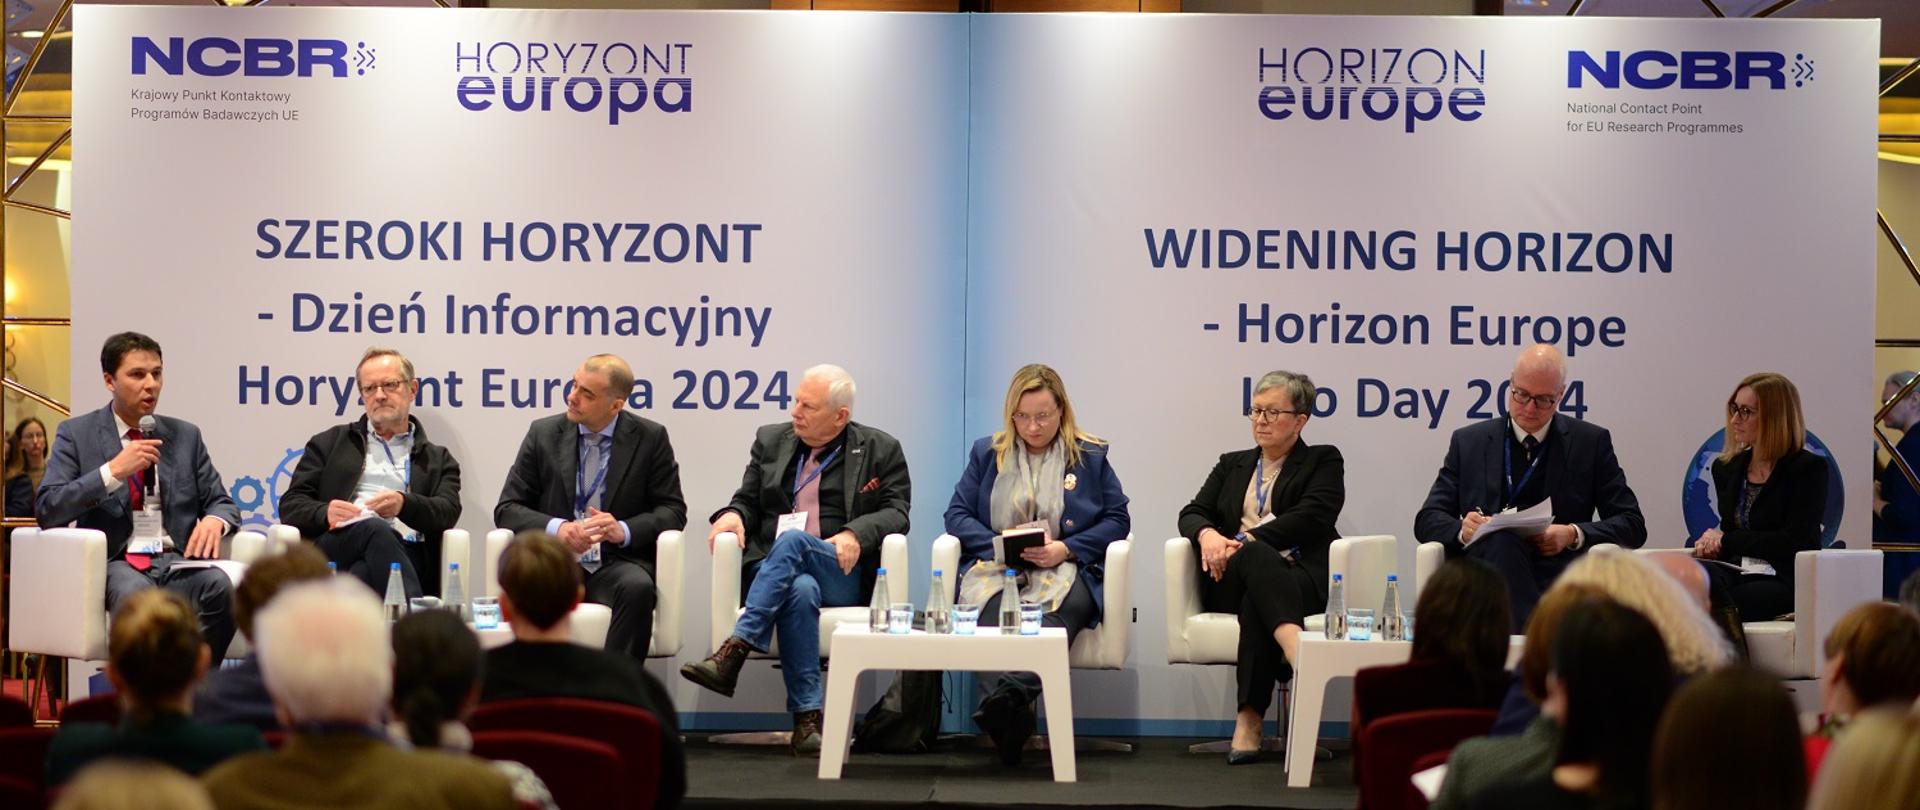 Wnioskodawcy z całej Polski wzięli udział w konferencji KPK Szeroki Horyzont 2024